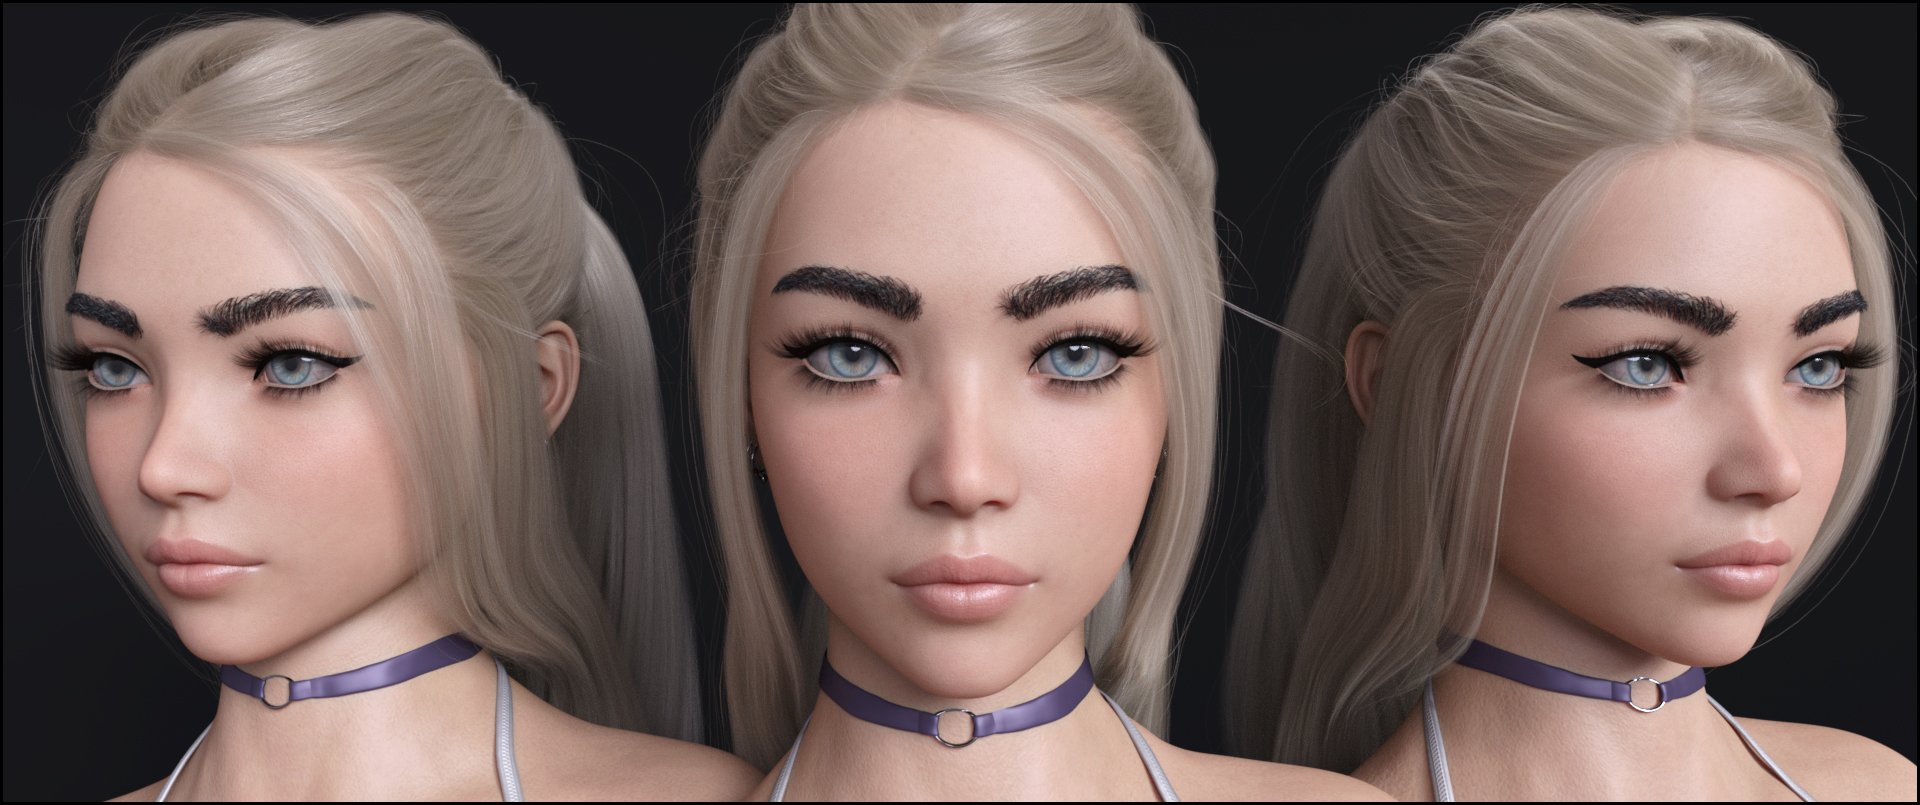 Verity for Genesis 8 Female by: JessaiiRaziel, 3D Models by Daz 3D